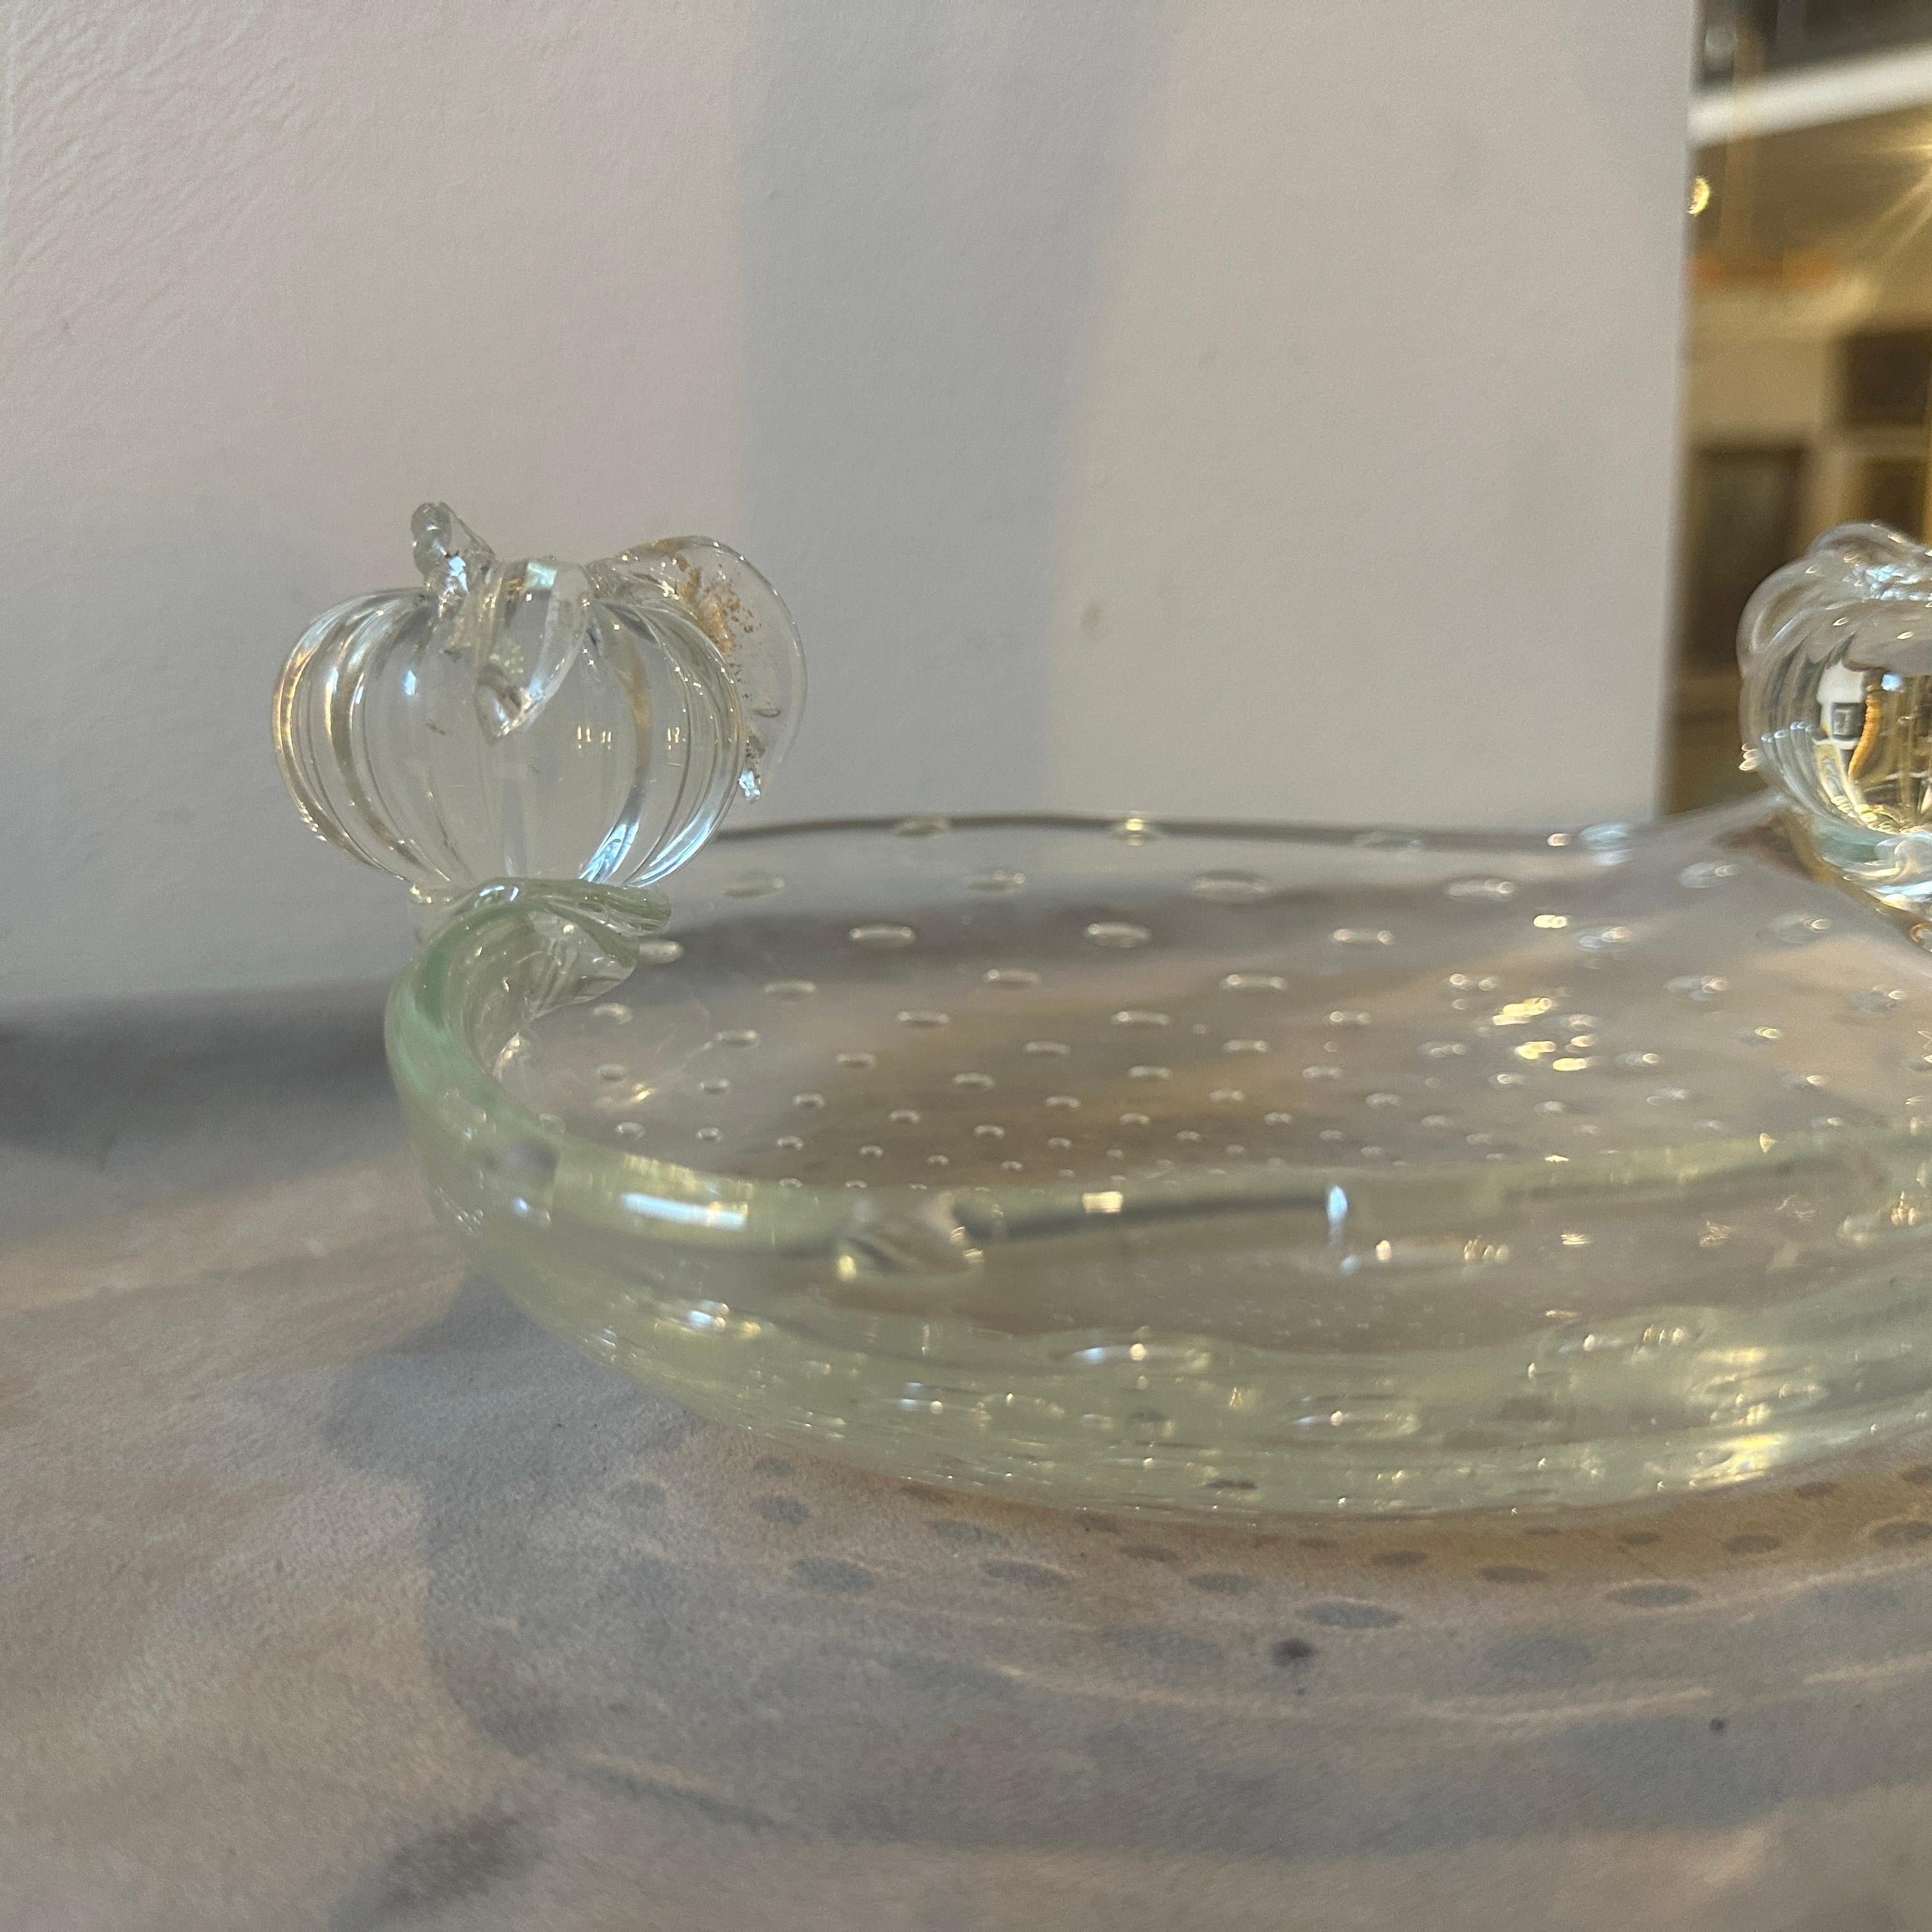 Coupe bullicante en verre de Murano fabriquée à Venise dans les années 50 par Barovier, la coupe ovale est ornée de deux fruits sur les côtés. Cette coupe est un bel exemple de l'artisanat exquis qui a fait la réputation de la famille Barovier et de